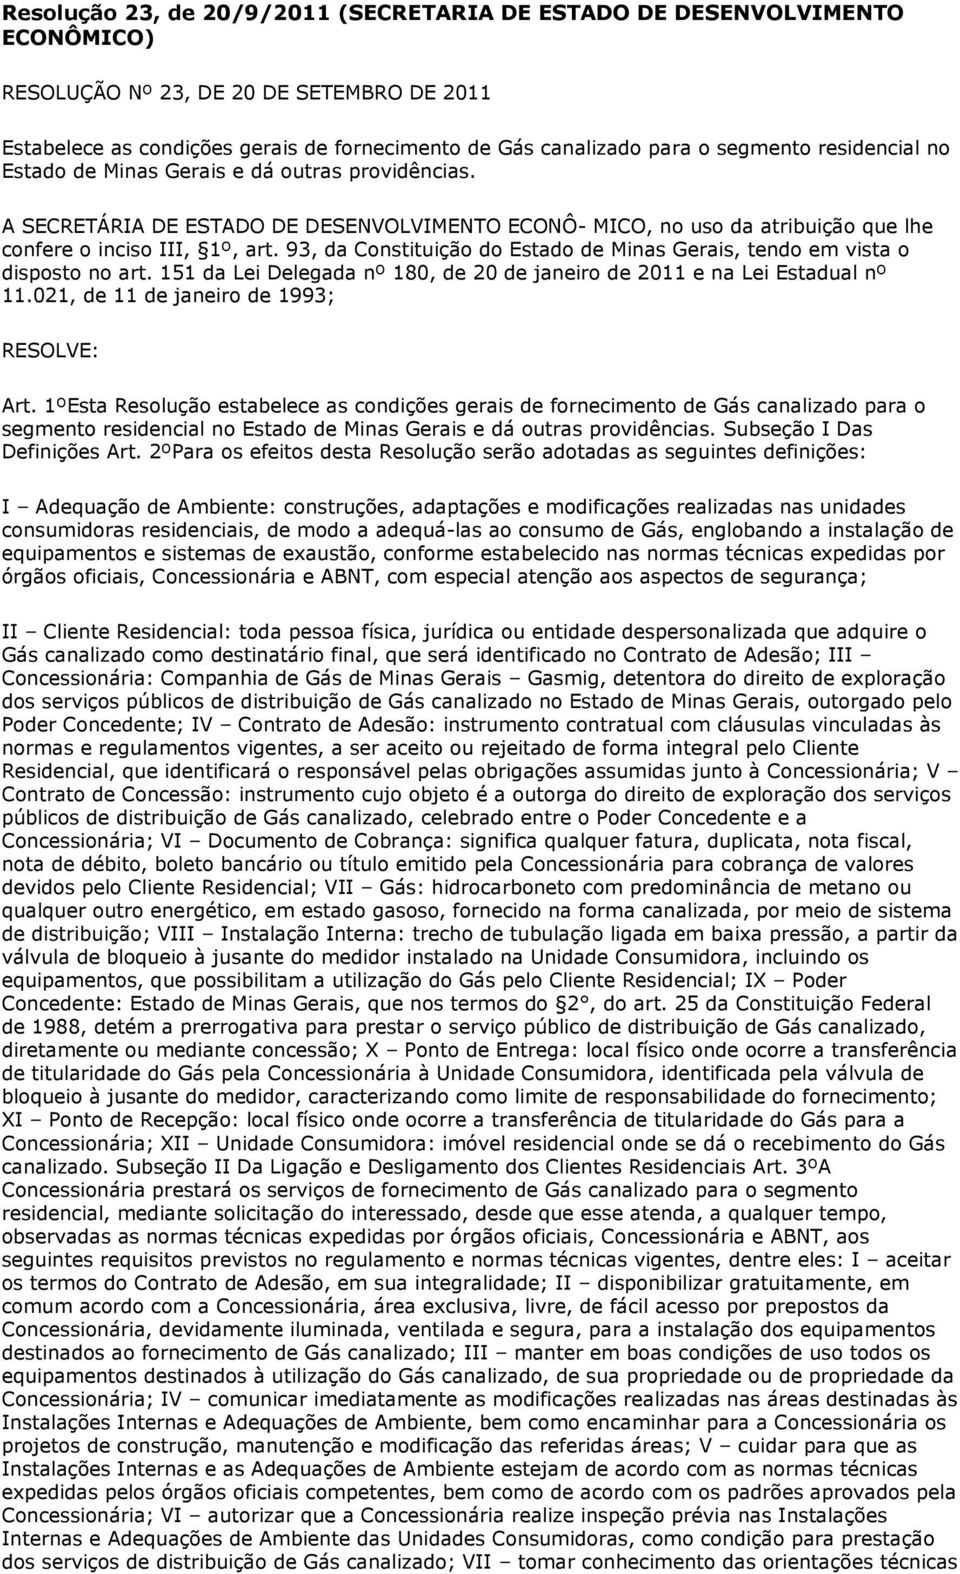 93, da Constituição do Estado de Minas Gerais, tendo em vista o disposto no art. 151 da Lei Delegada nº 180, de 20 de janeiro de 2011 e na Lei Estadual nº 11.